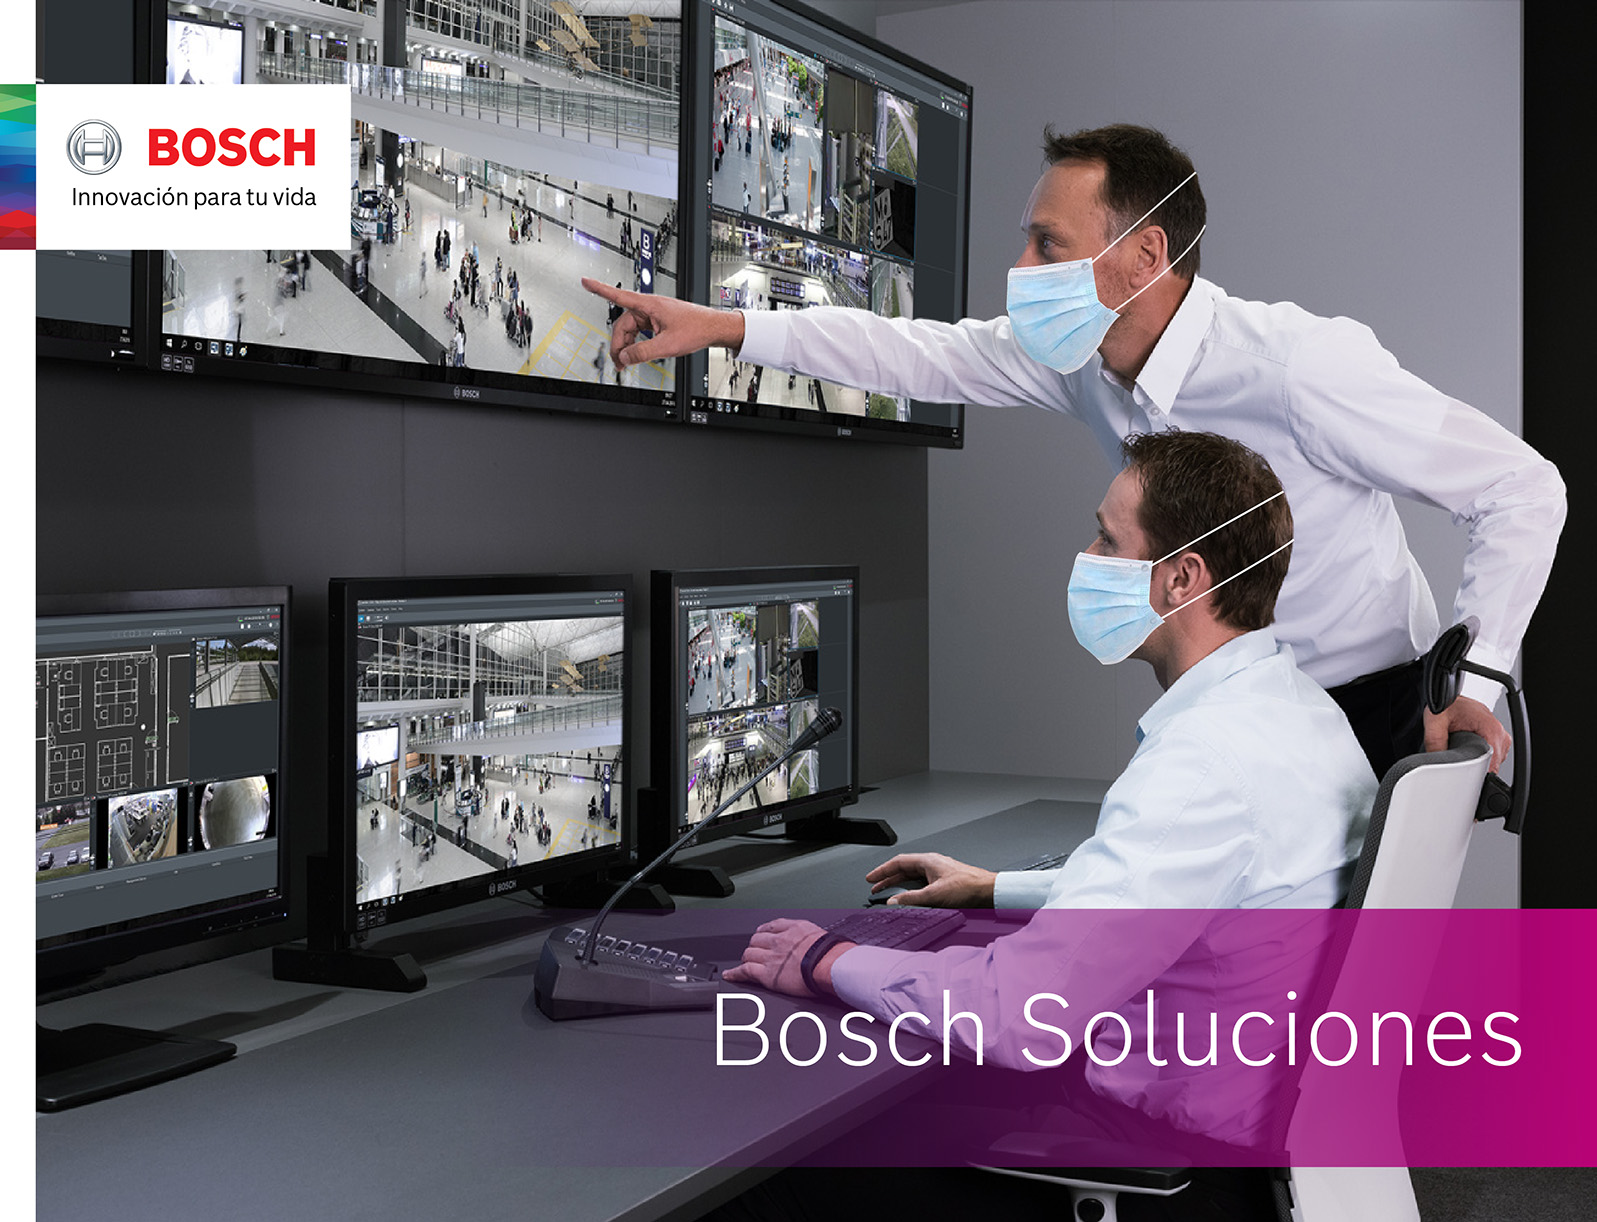 Bosch ofrece soluciones de “servitización” de la seguridad con la nueva normalidad